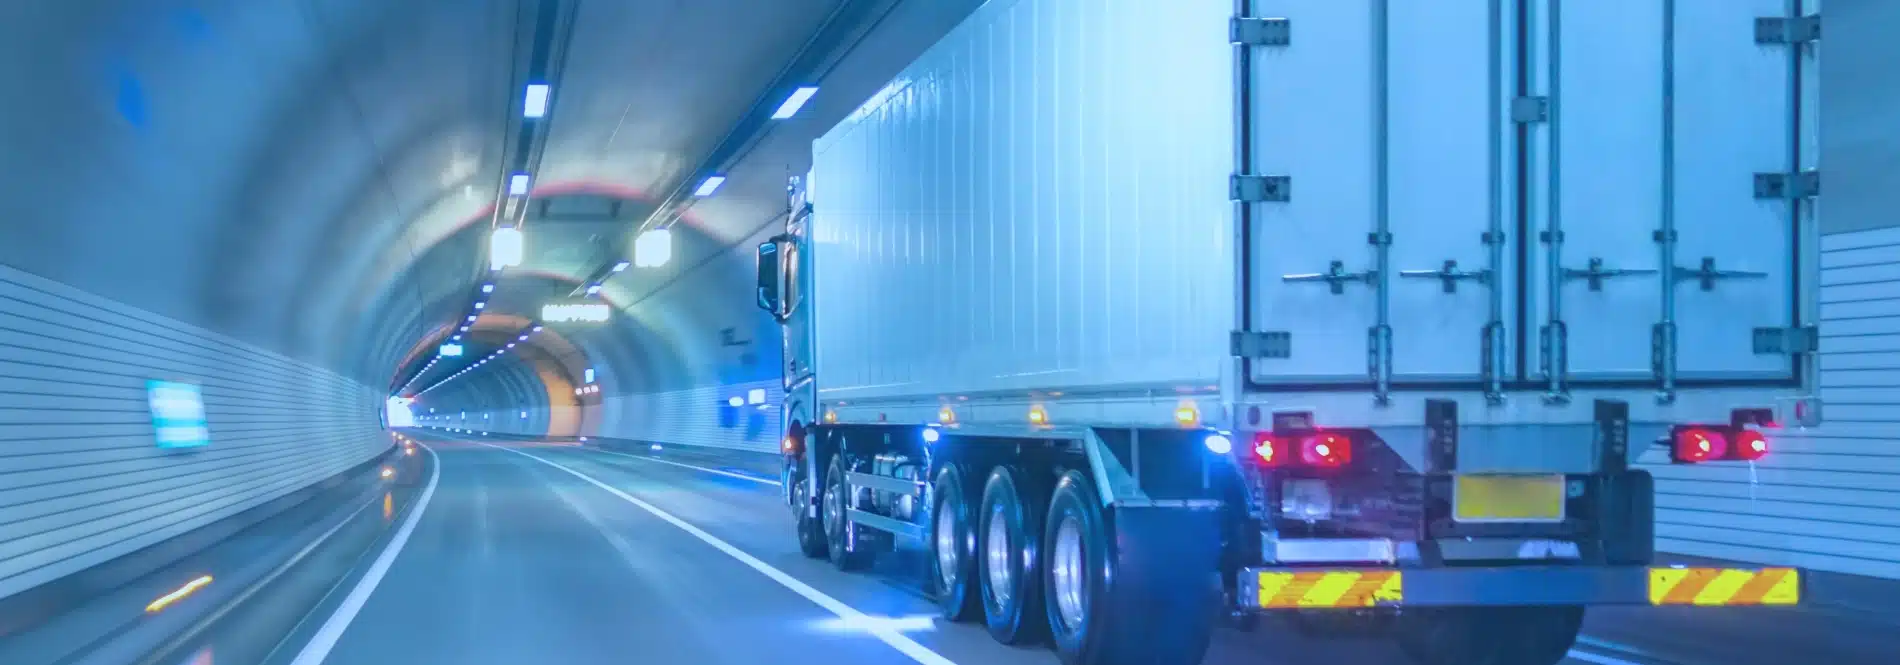 Truck drives through a tunnel